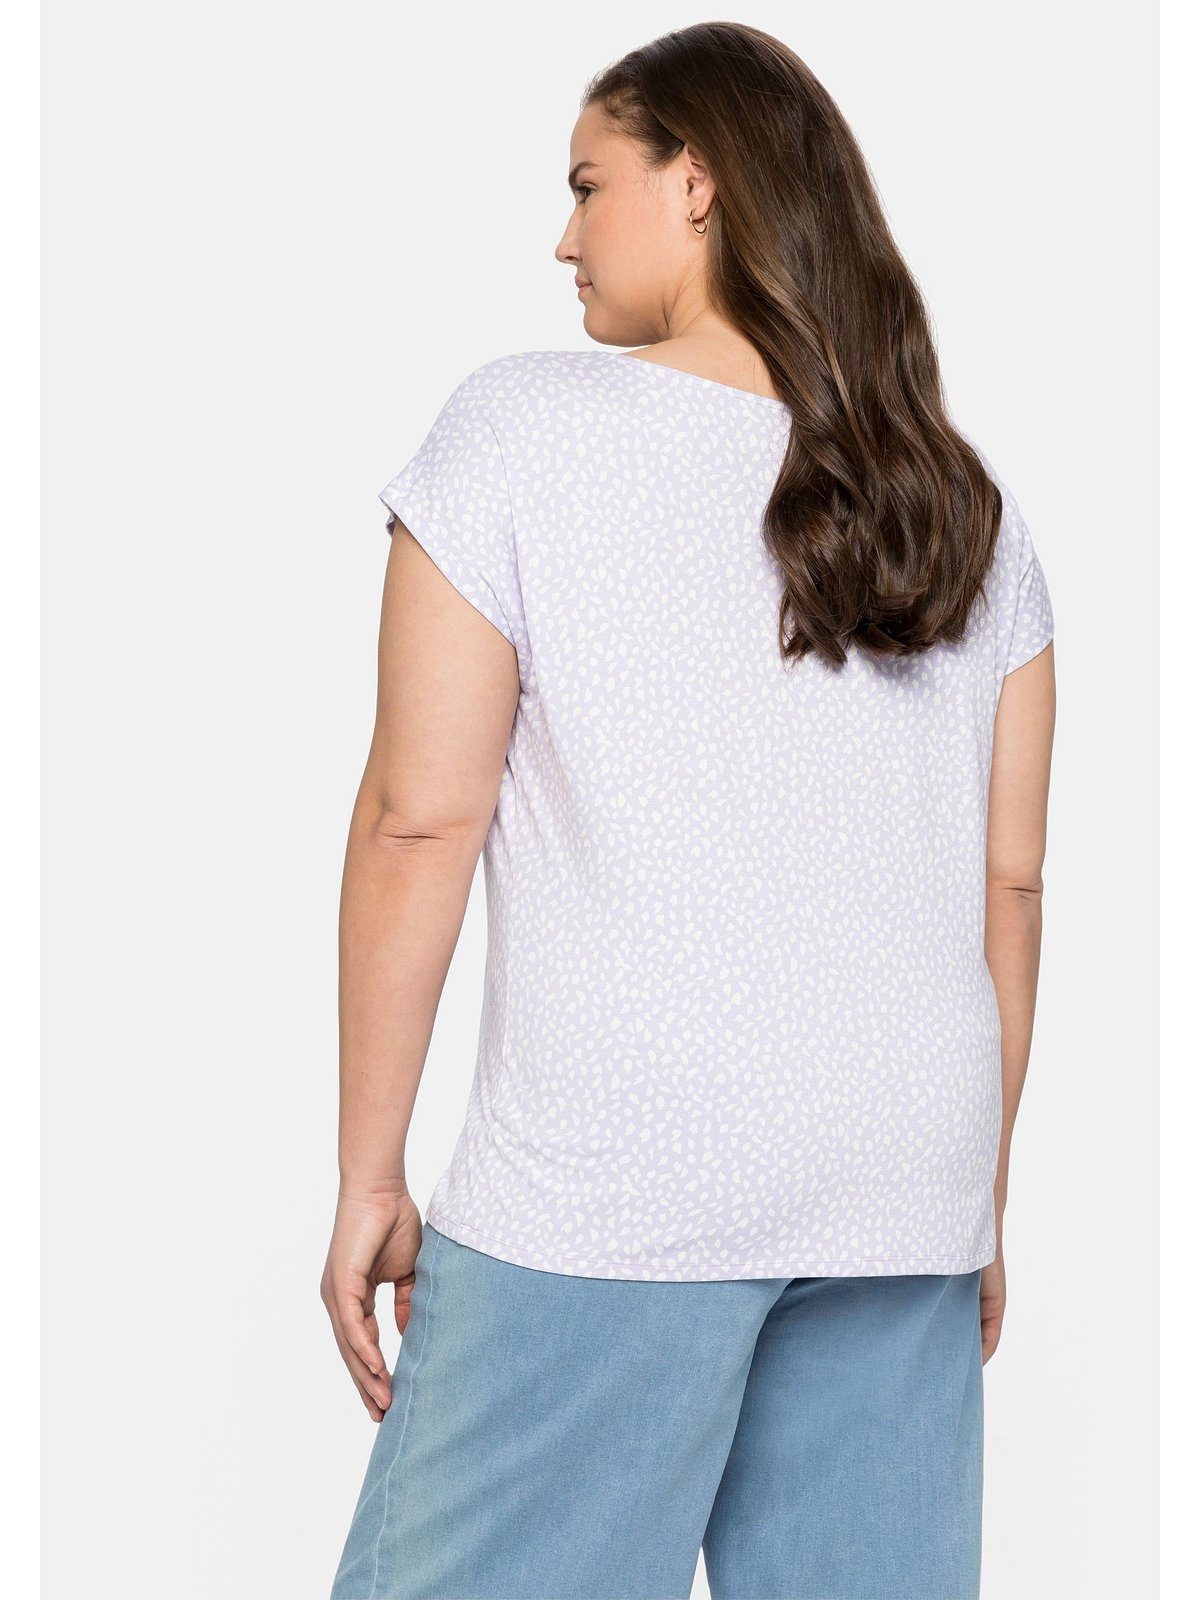 und T-Shirt Falten gelegten lavendel mit Größen Sheego Große Alloverdruck